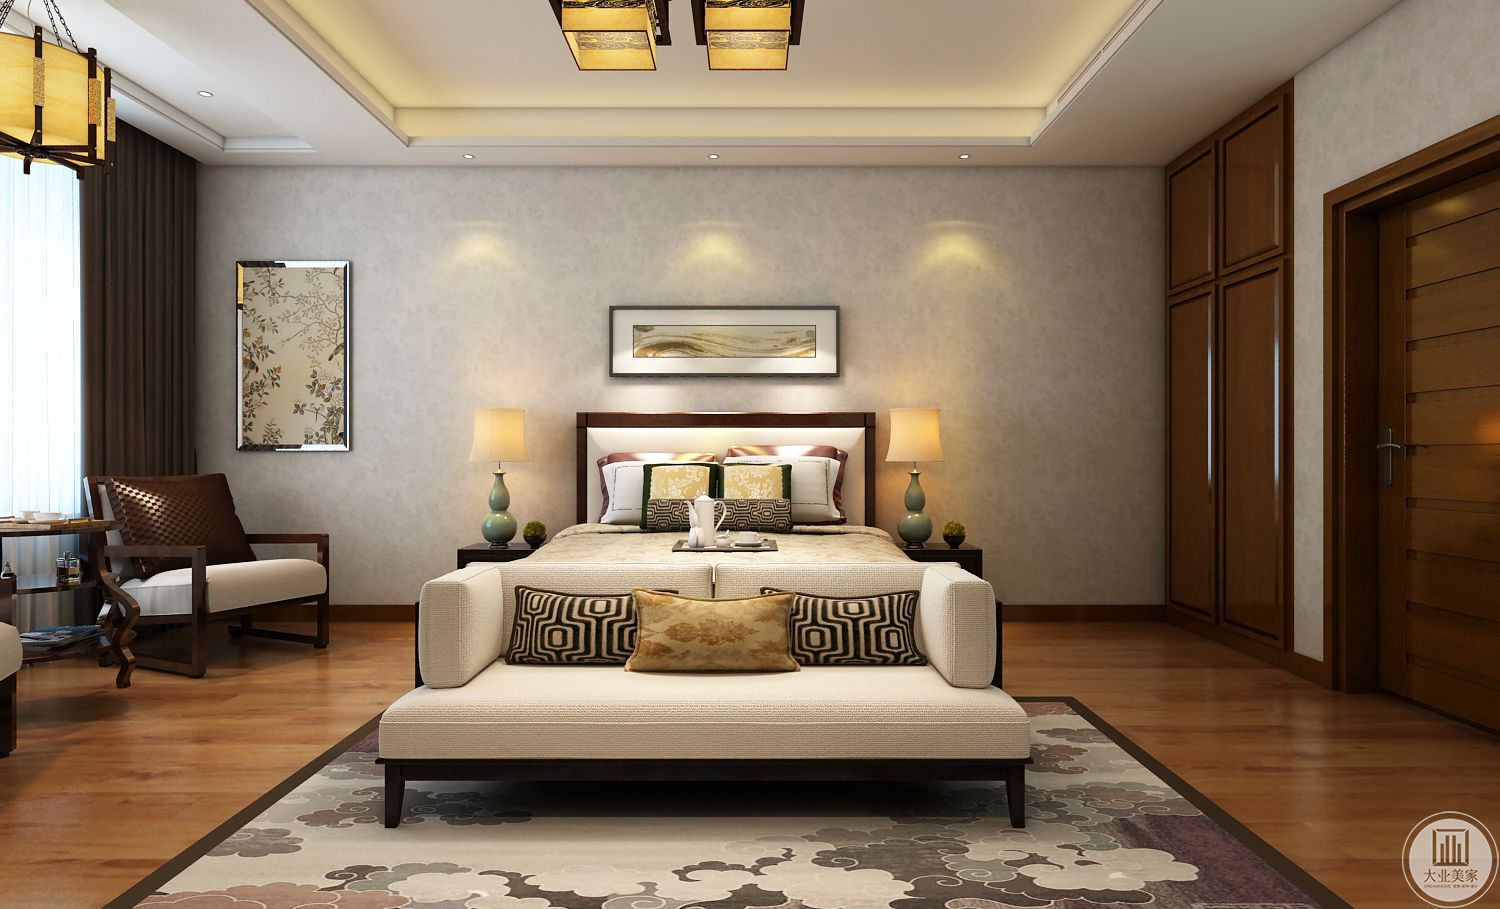 次卧室装修效果图：次卧室墙面铺浅黄色壁纸，搭配景物装饰画，地面采用浅色木地板，搭配浅色地毯。